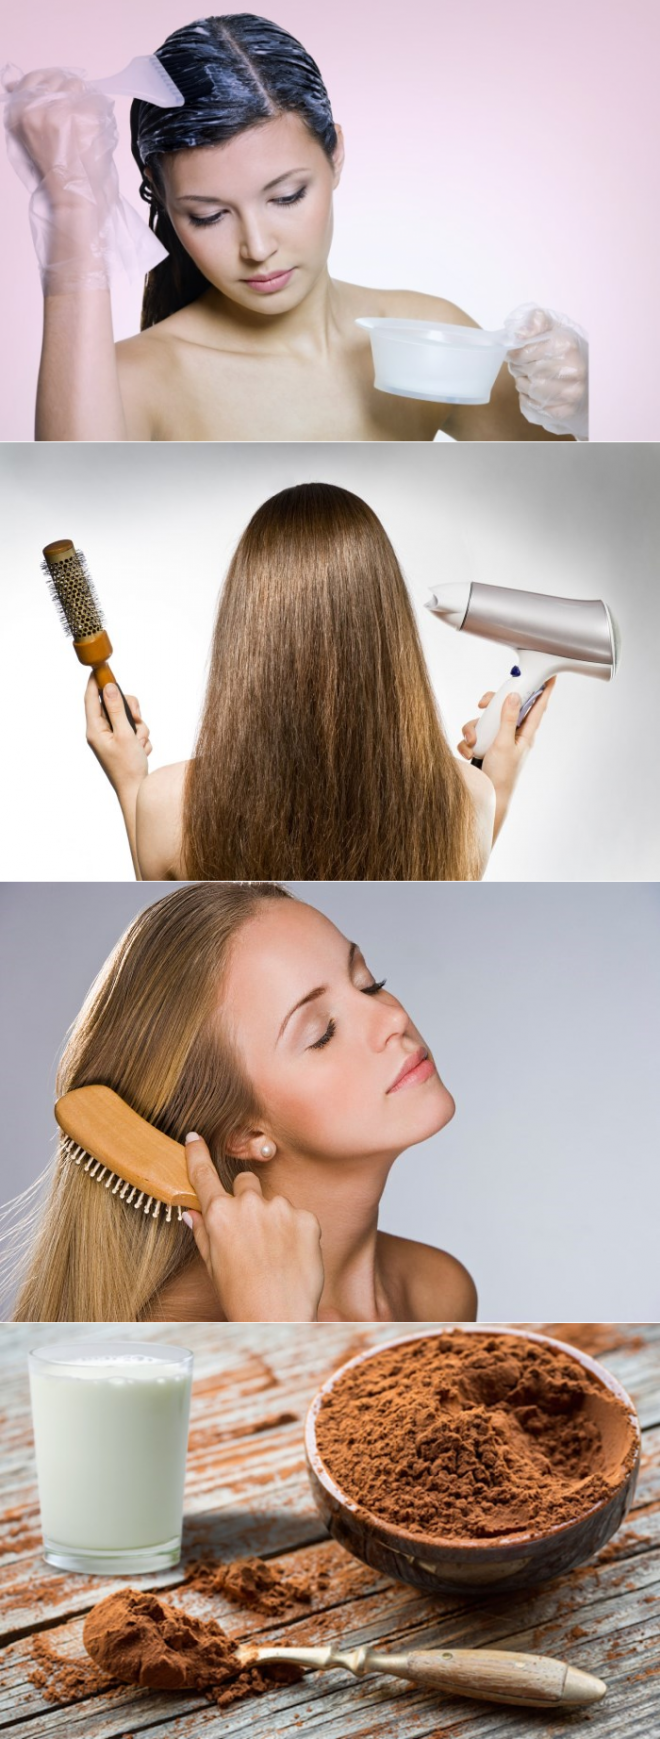 Маска для волос для роста волос в домашних условиях для сухих или окрашенных волос